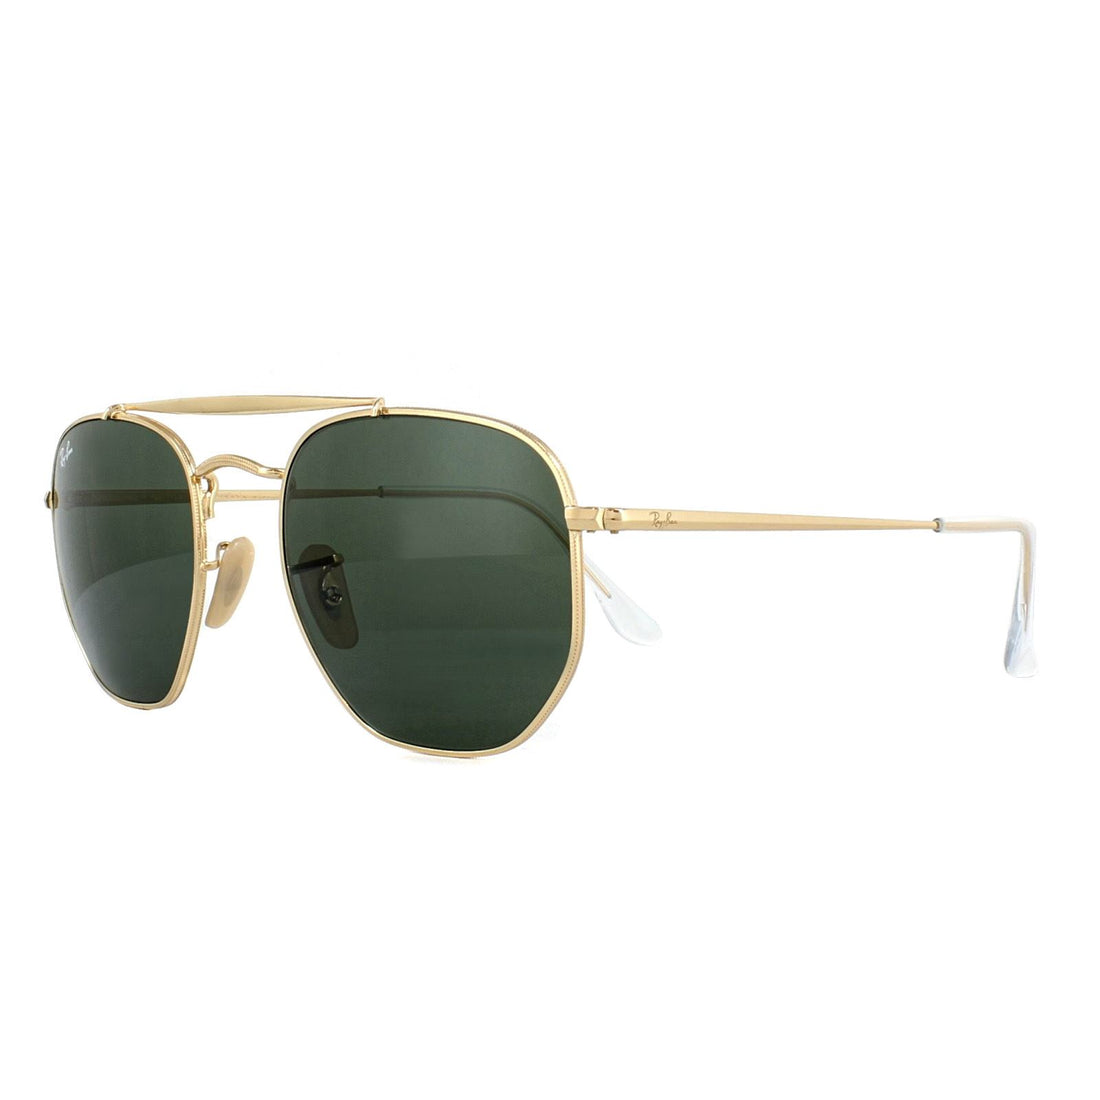 Ray-Ban Sunglasses Marshal 3648 001 Gold Green G-15